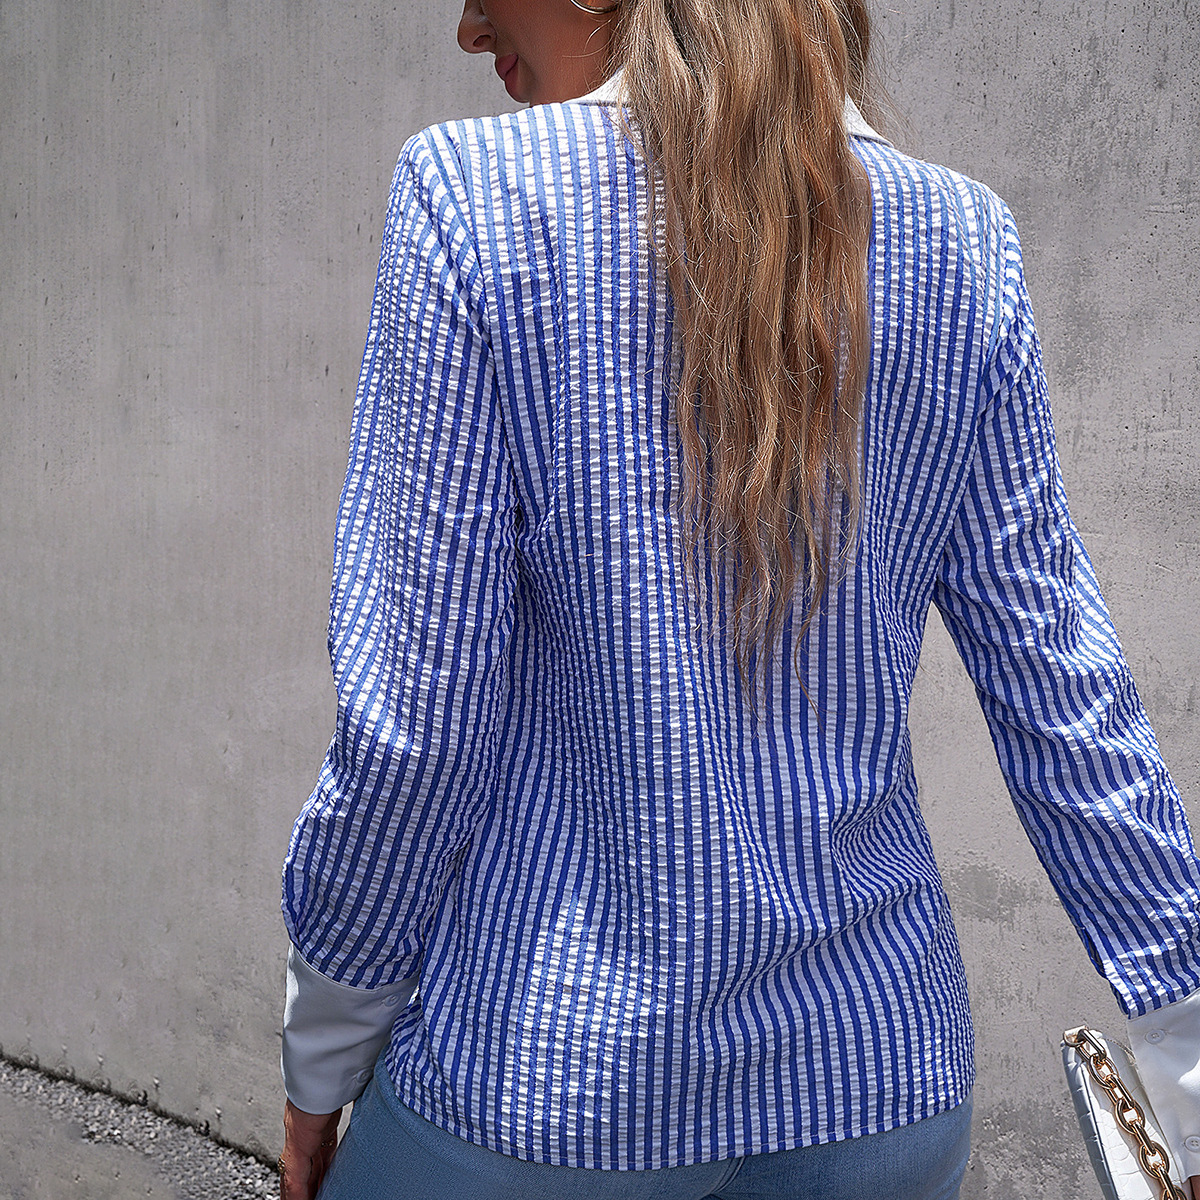 Long sleeve temperament shirt stripe tops for women